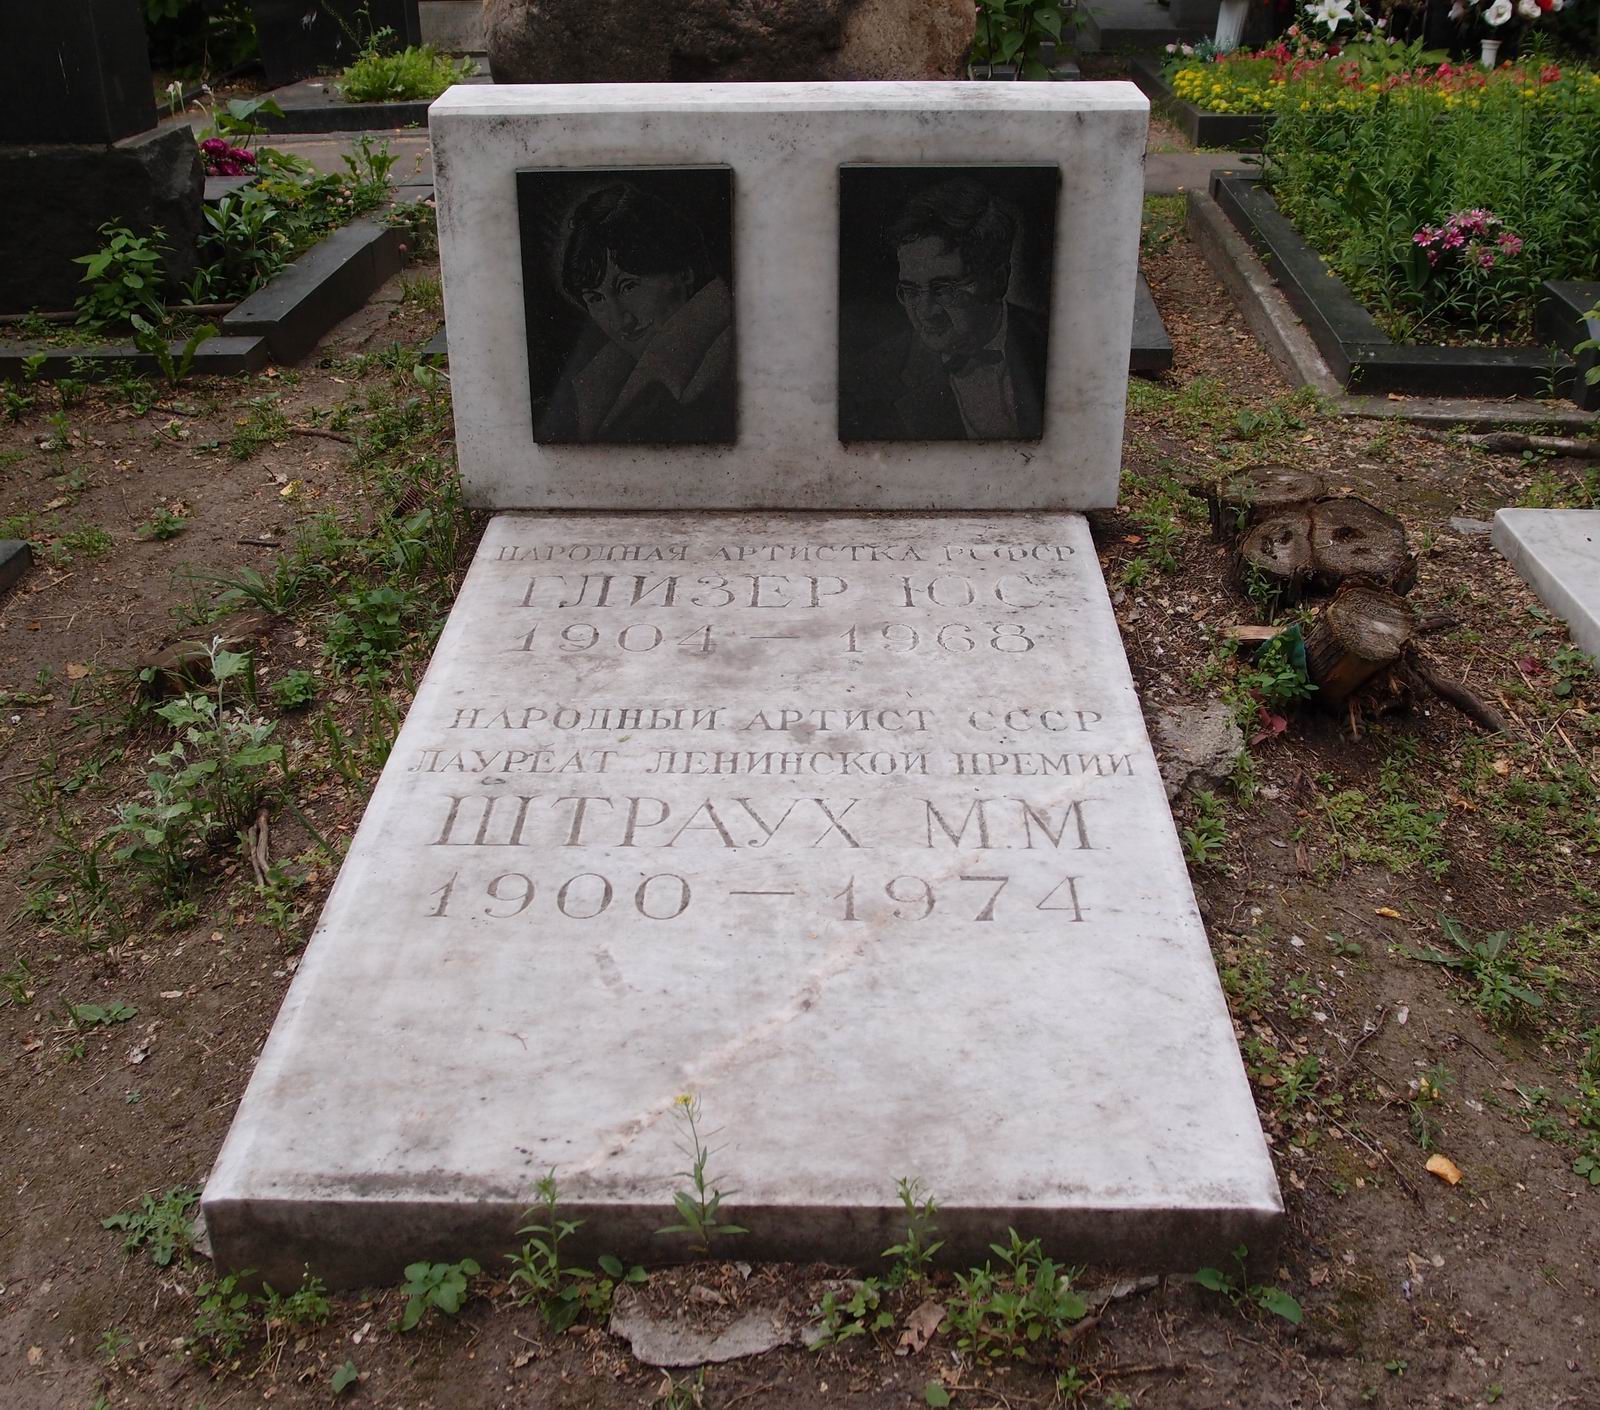 Памятник на могиле Штрауха М.М. (1900–1974), на Новодевичьем кладбище (7–3–8).